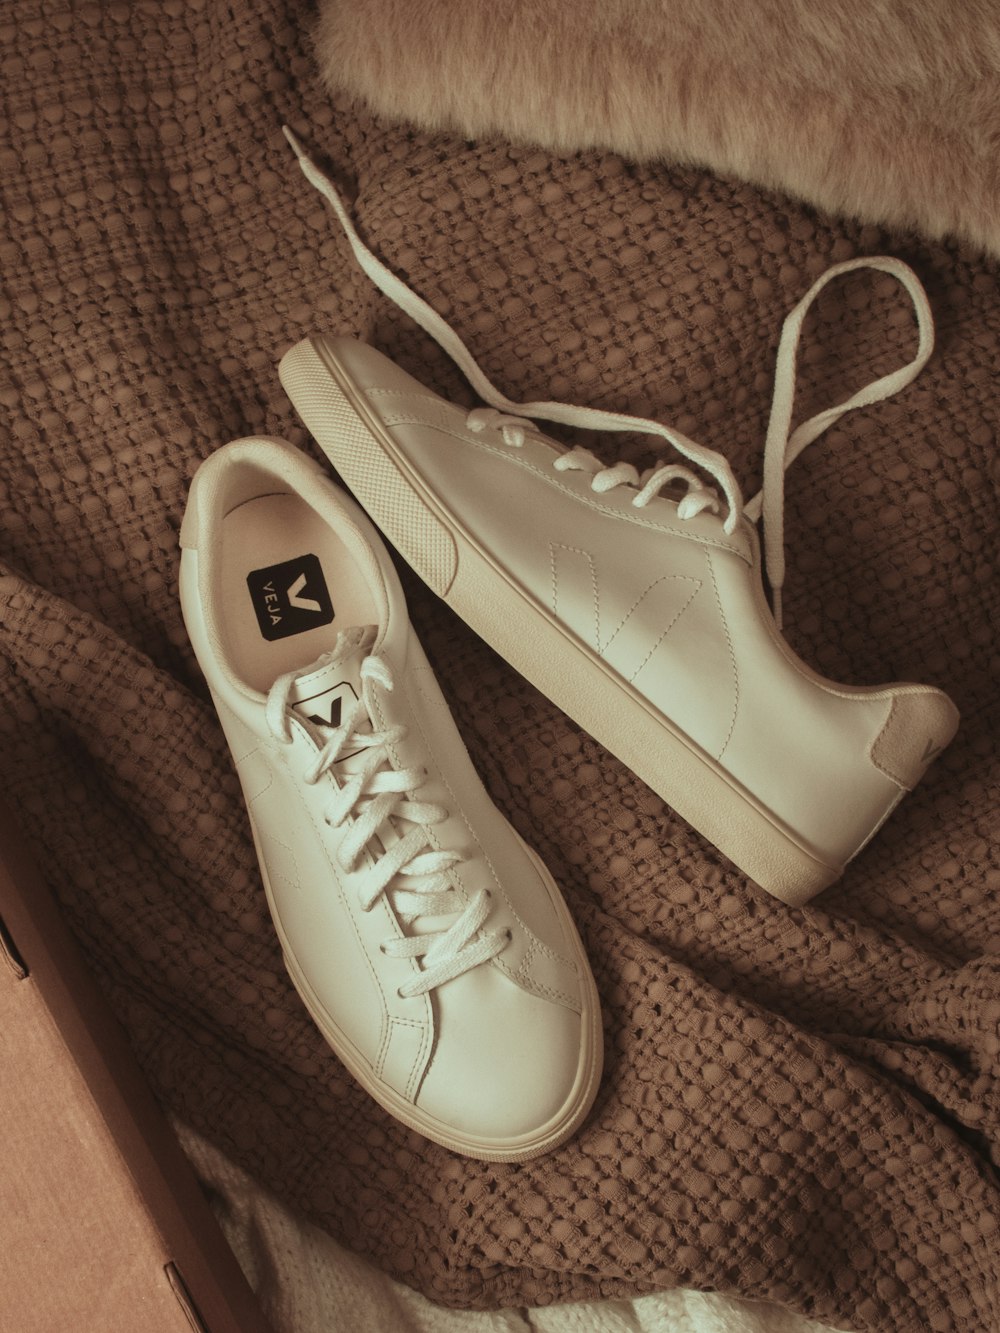 Foto zapatillas bajas blancas converse all star – Imagen Marrón gratis en  Unsplash